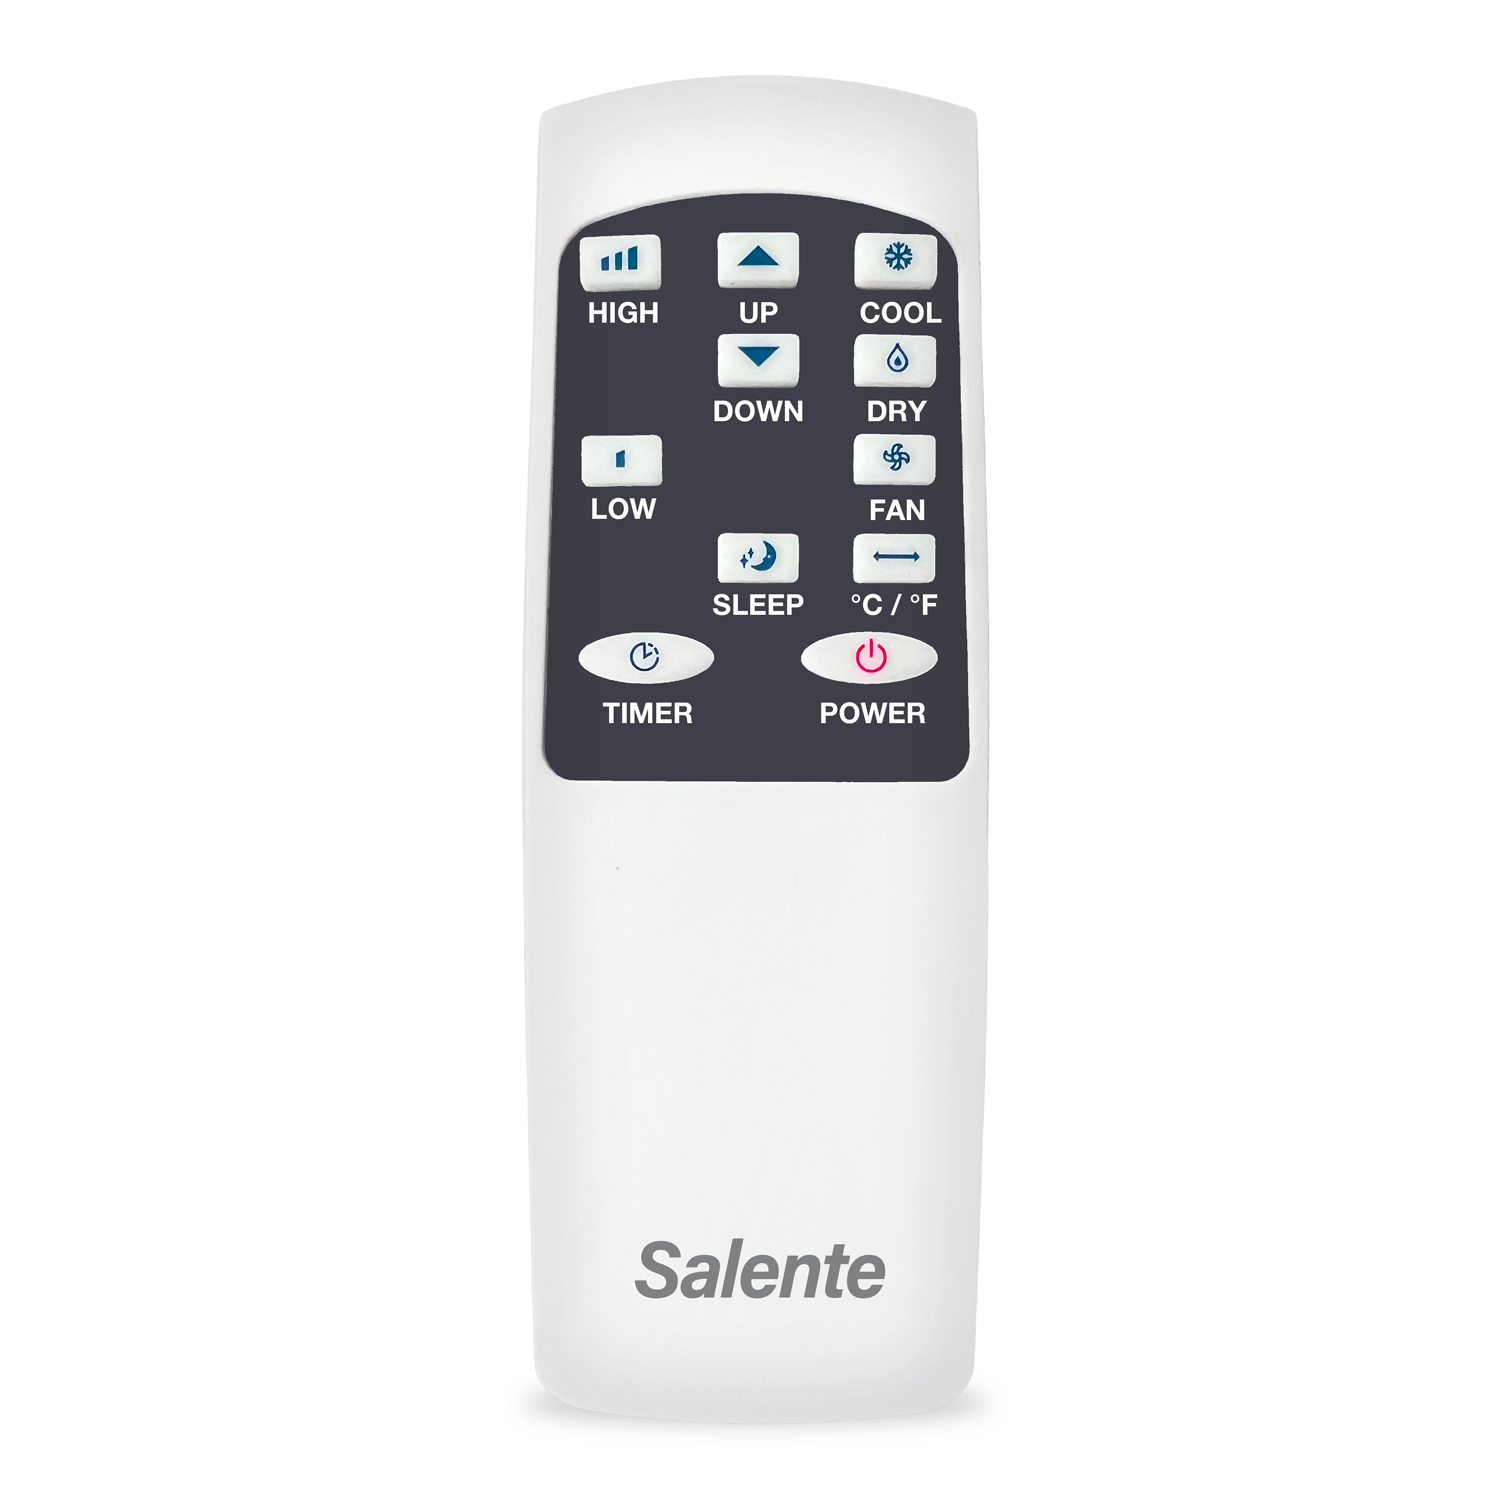 Obrázek Salente SummerICE9, chytrá mobilní klimatizace, 9000 BTU, WiFi+Bluetooth, dálk. ovl.